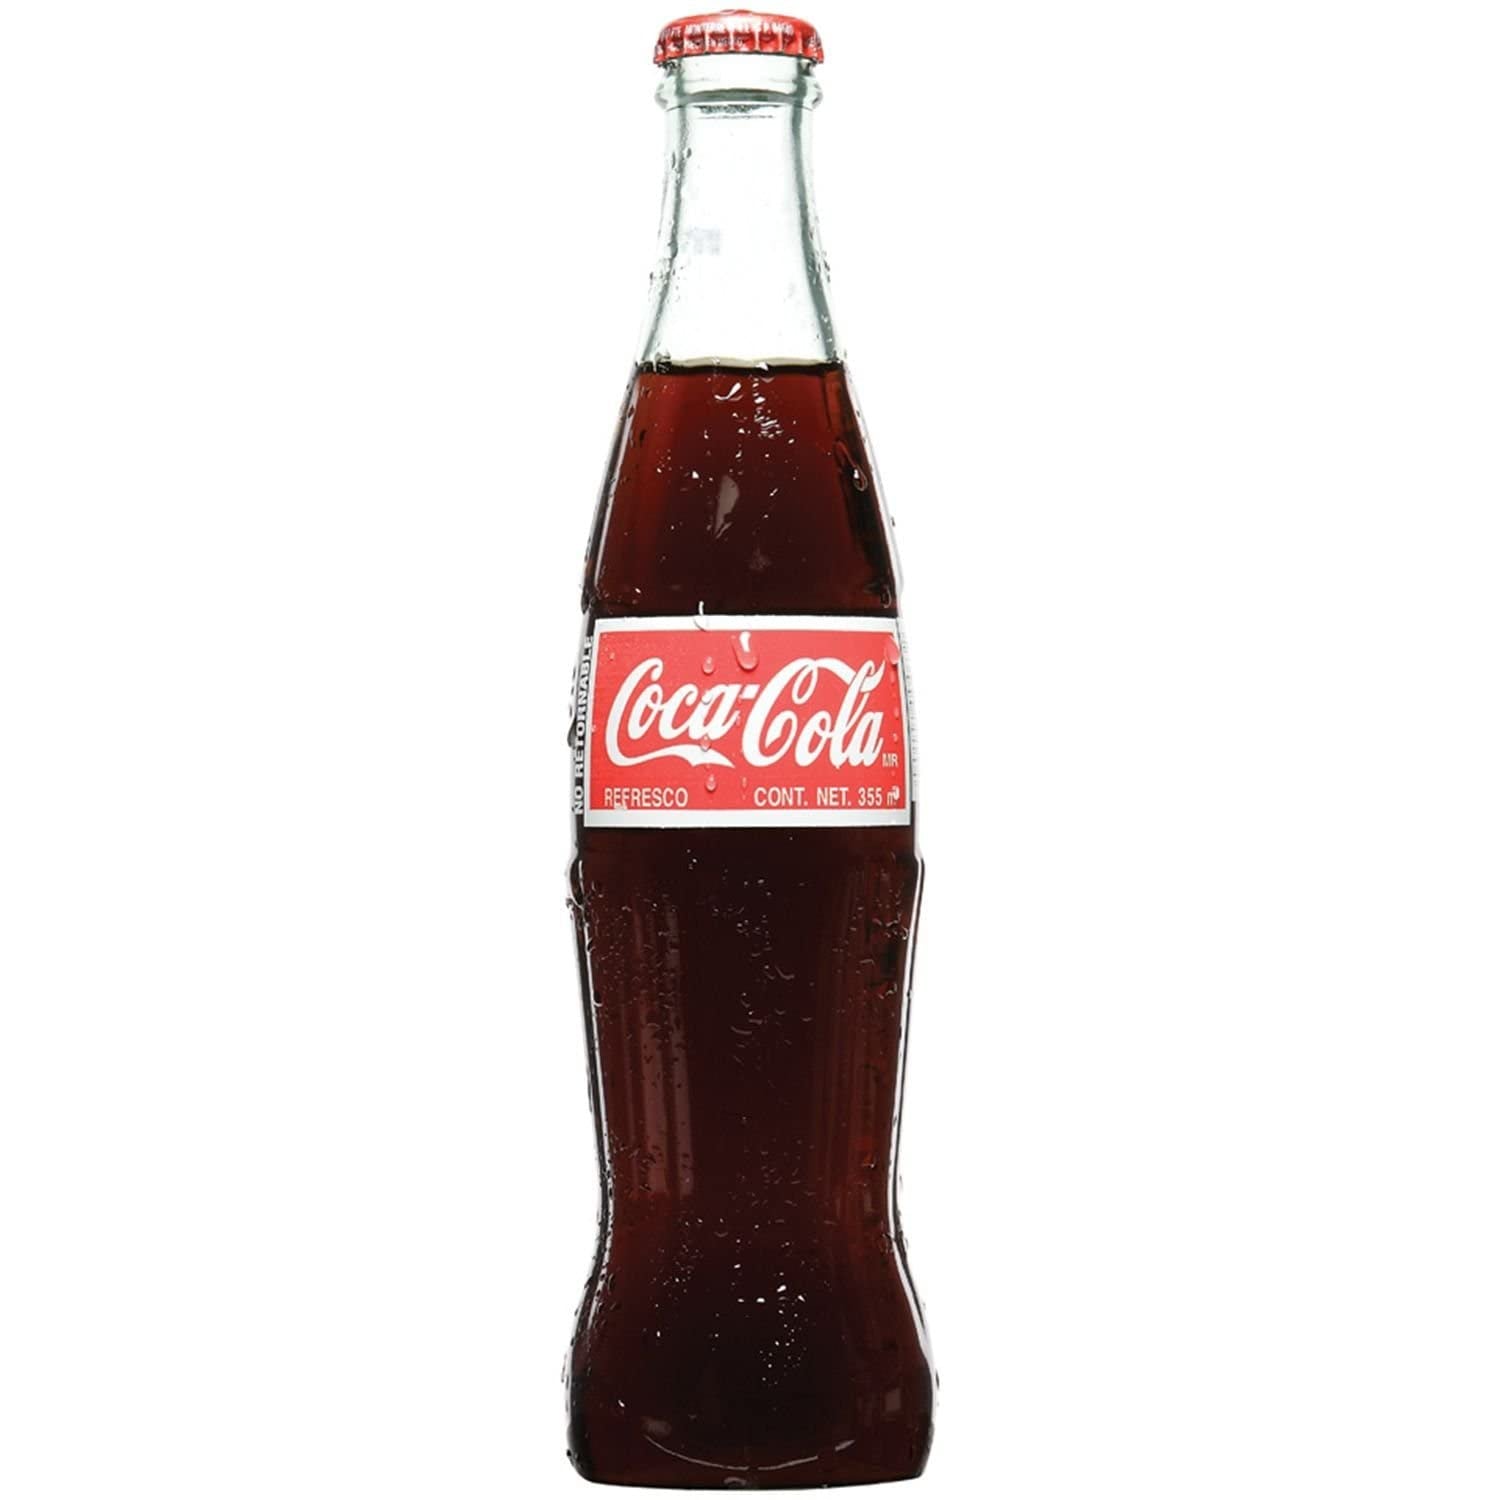 Coca-Cola Mexico Glass Bottle - 355ml